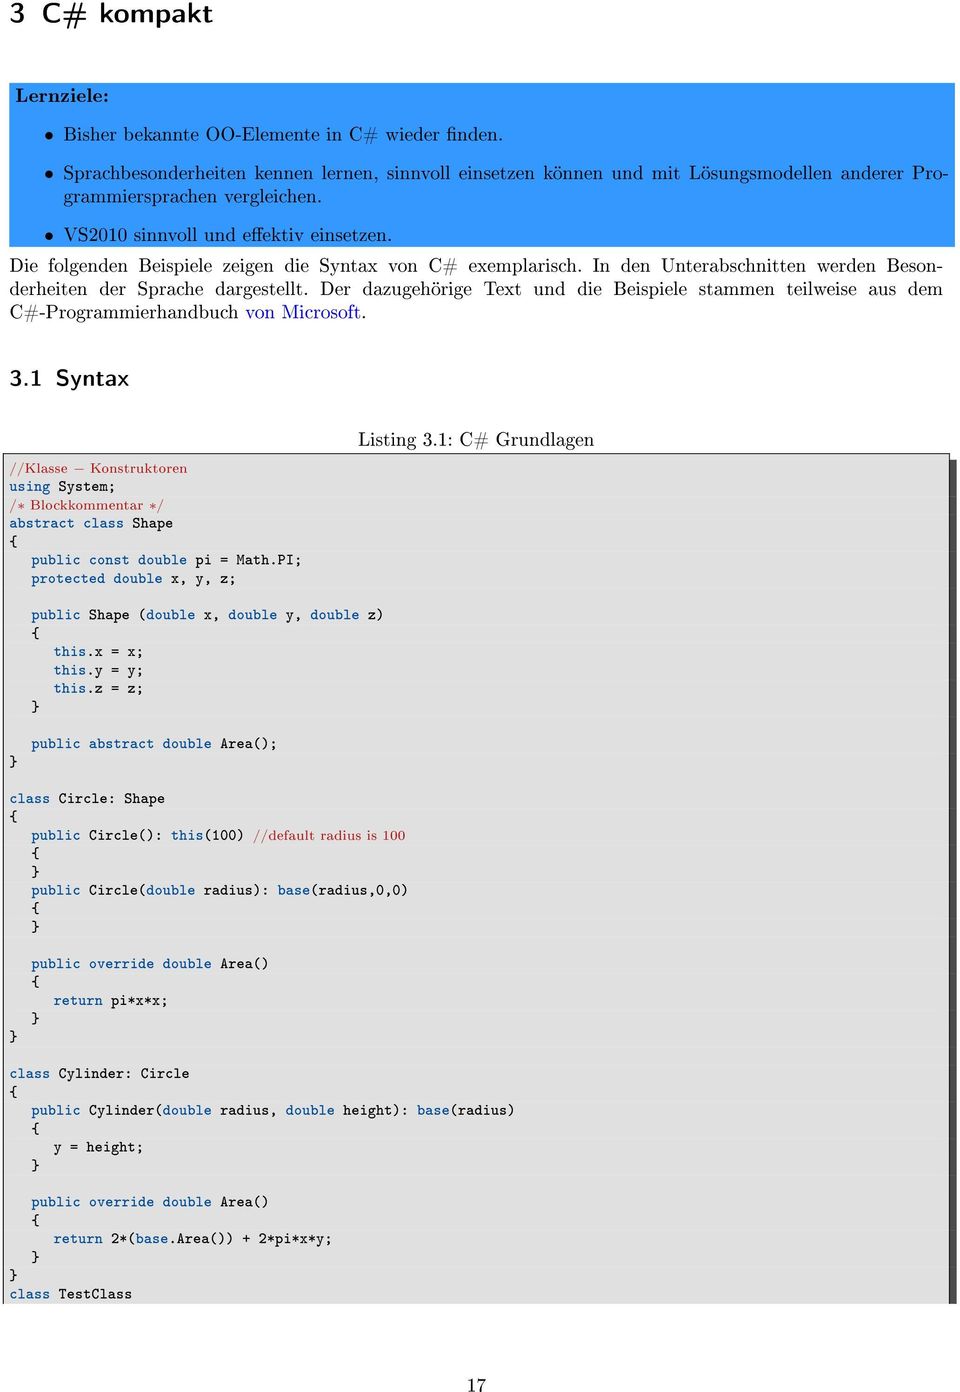 Der dazugehörige Text und die Beispiele stammen teilweise aus dem C#-Programmierhandbuch von Microsoft. 3.